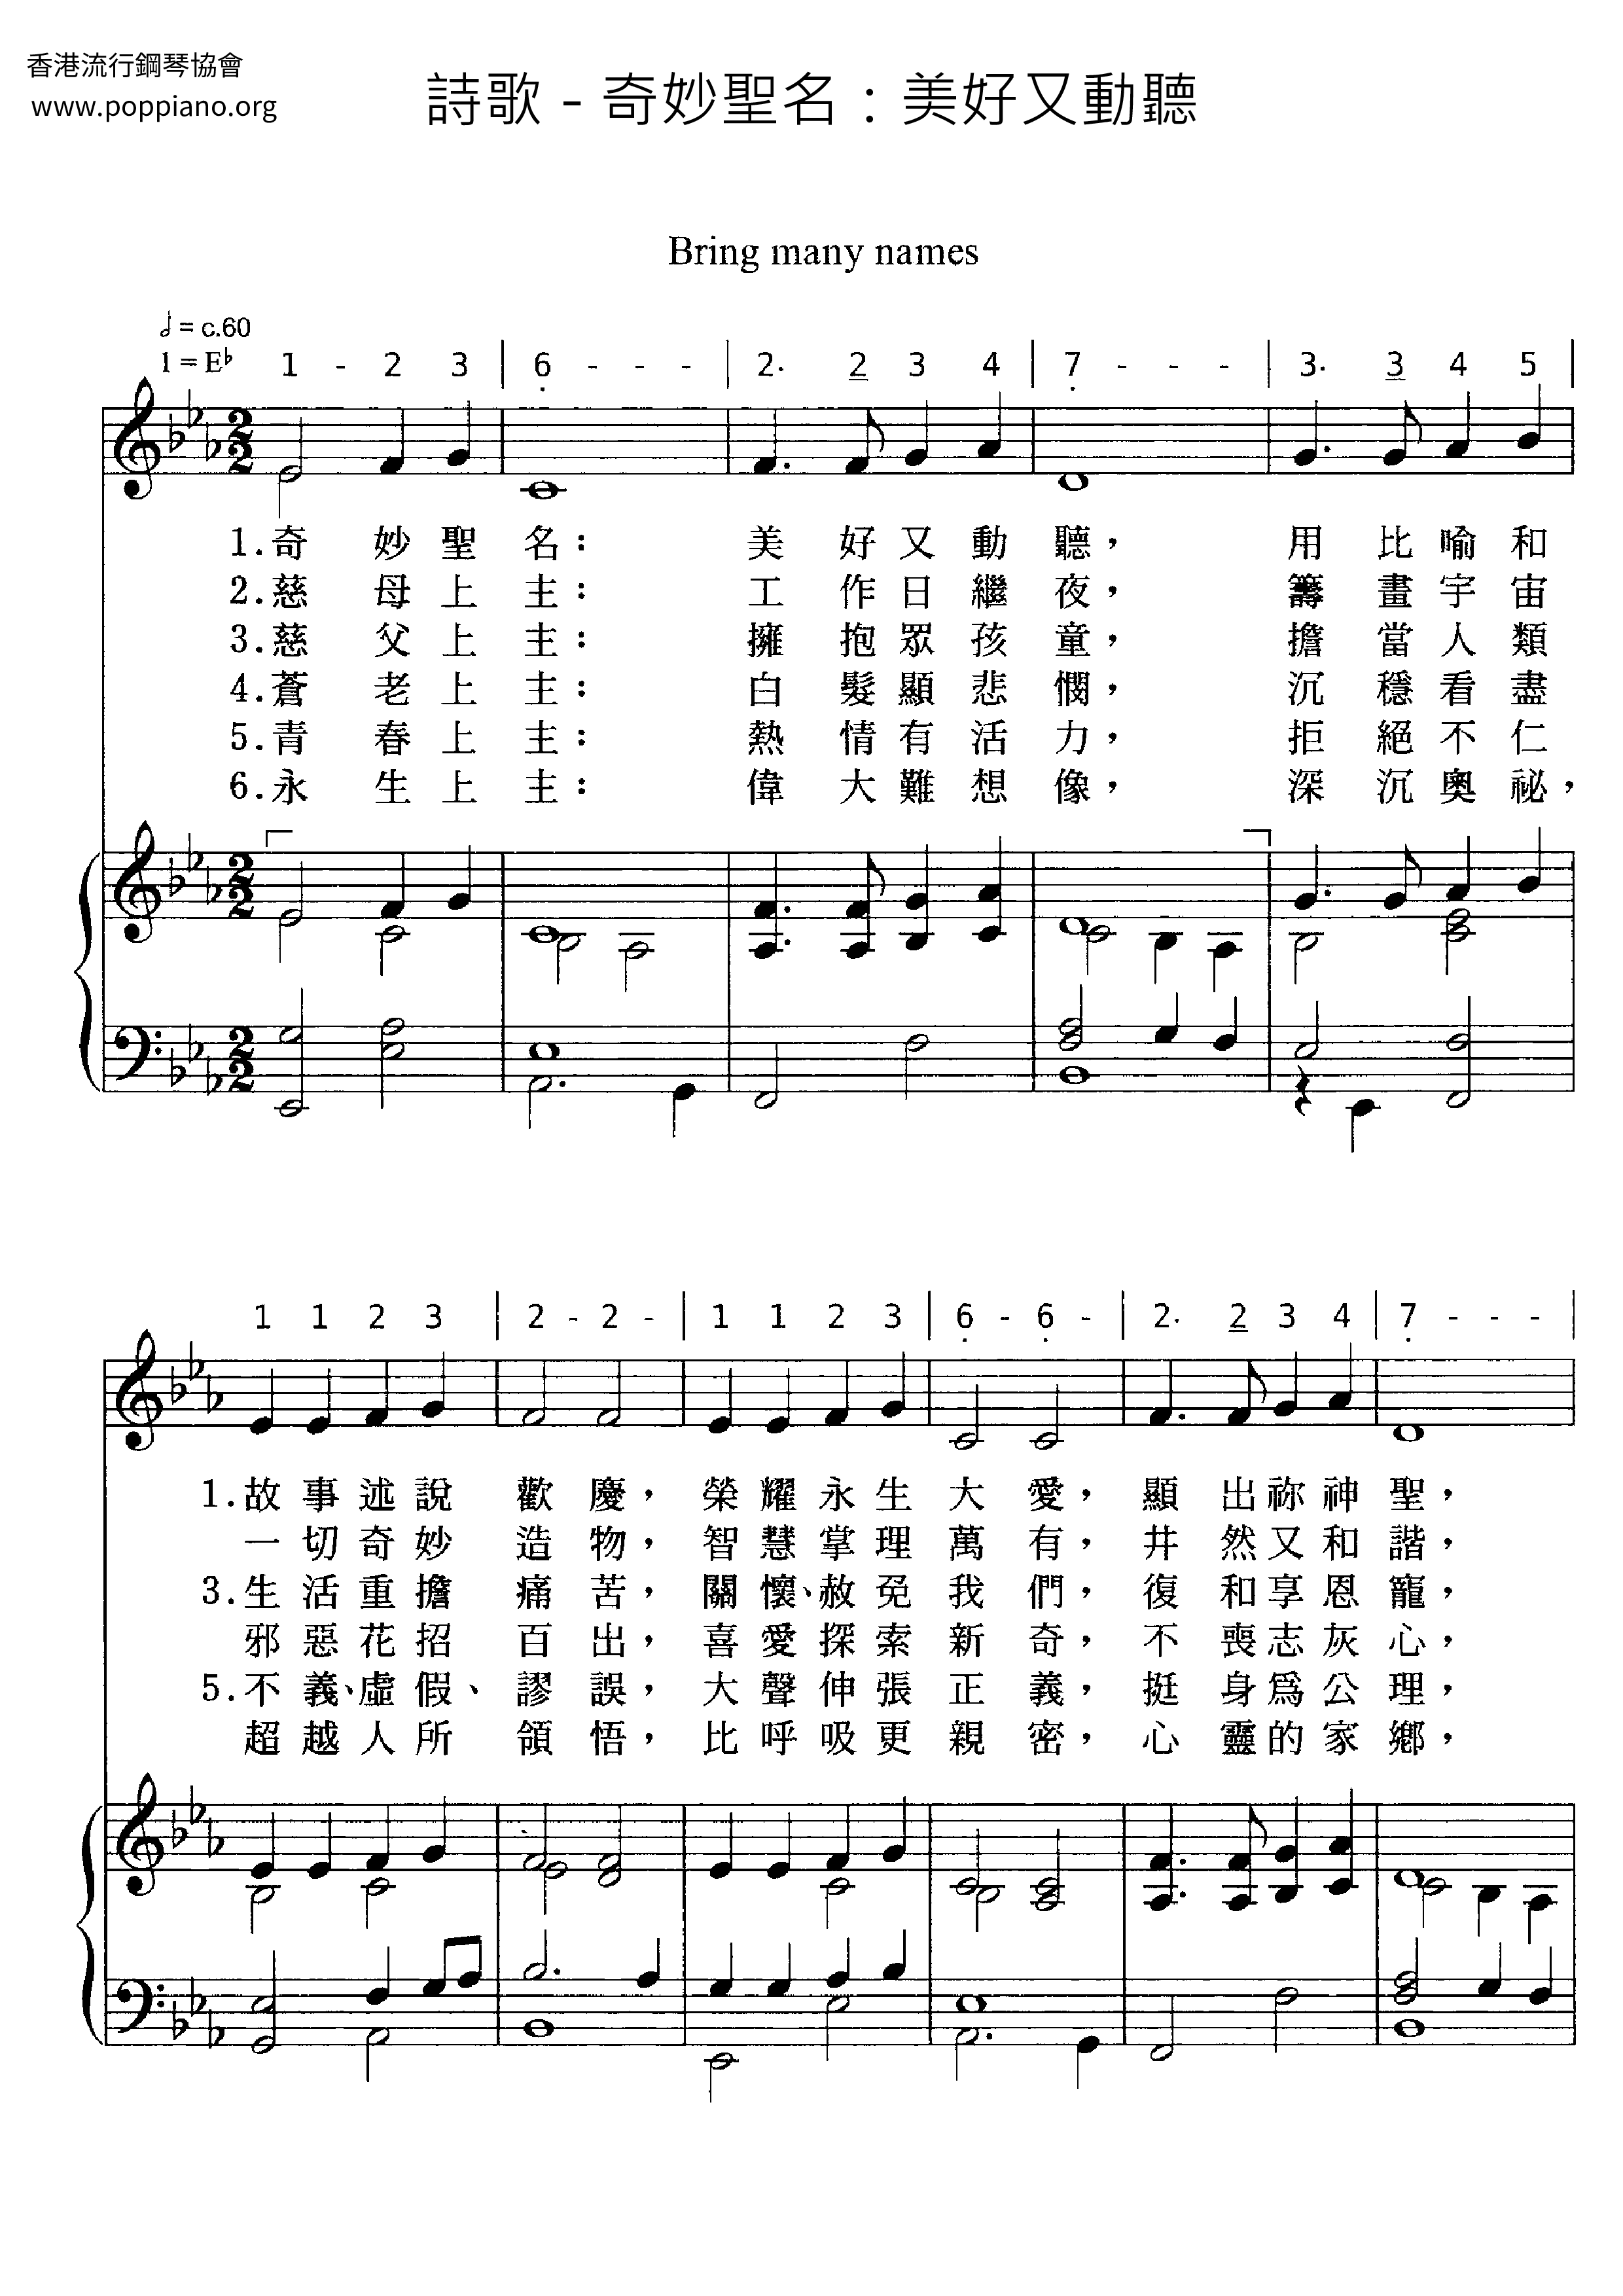 Wonderful Holy Name: Beautiful And Beautiful Score